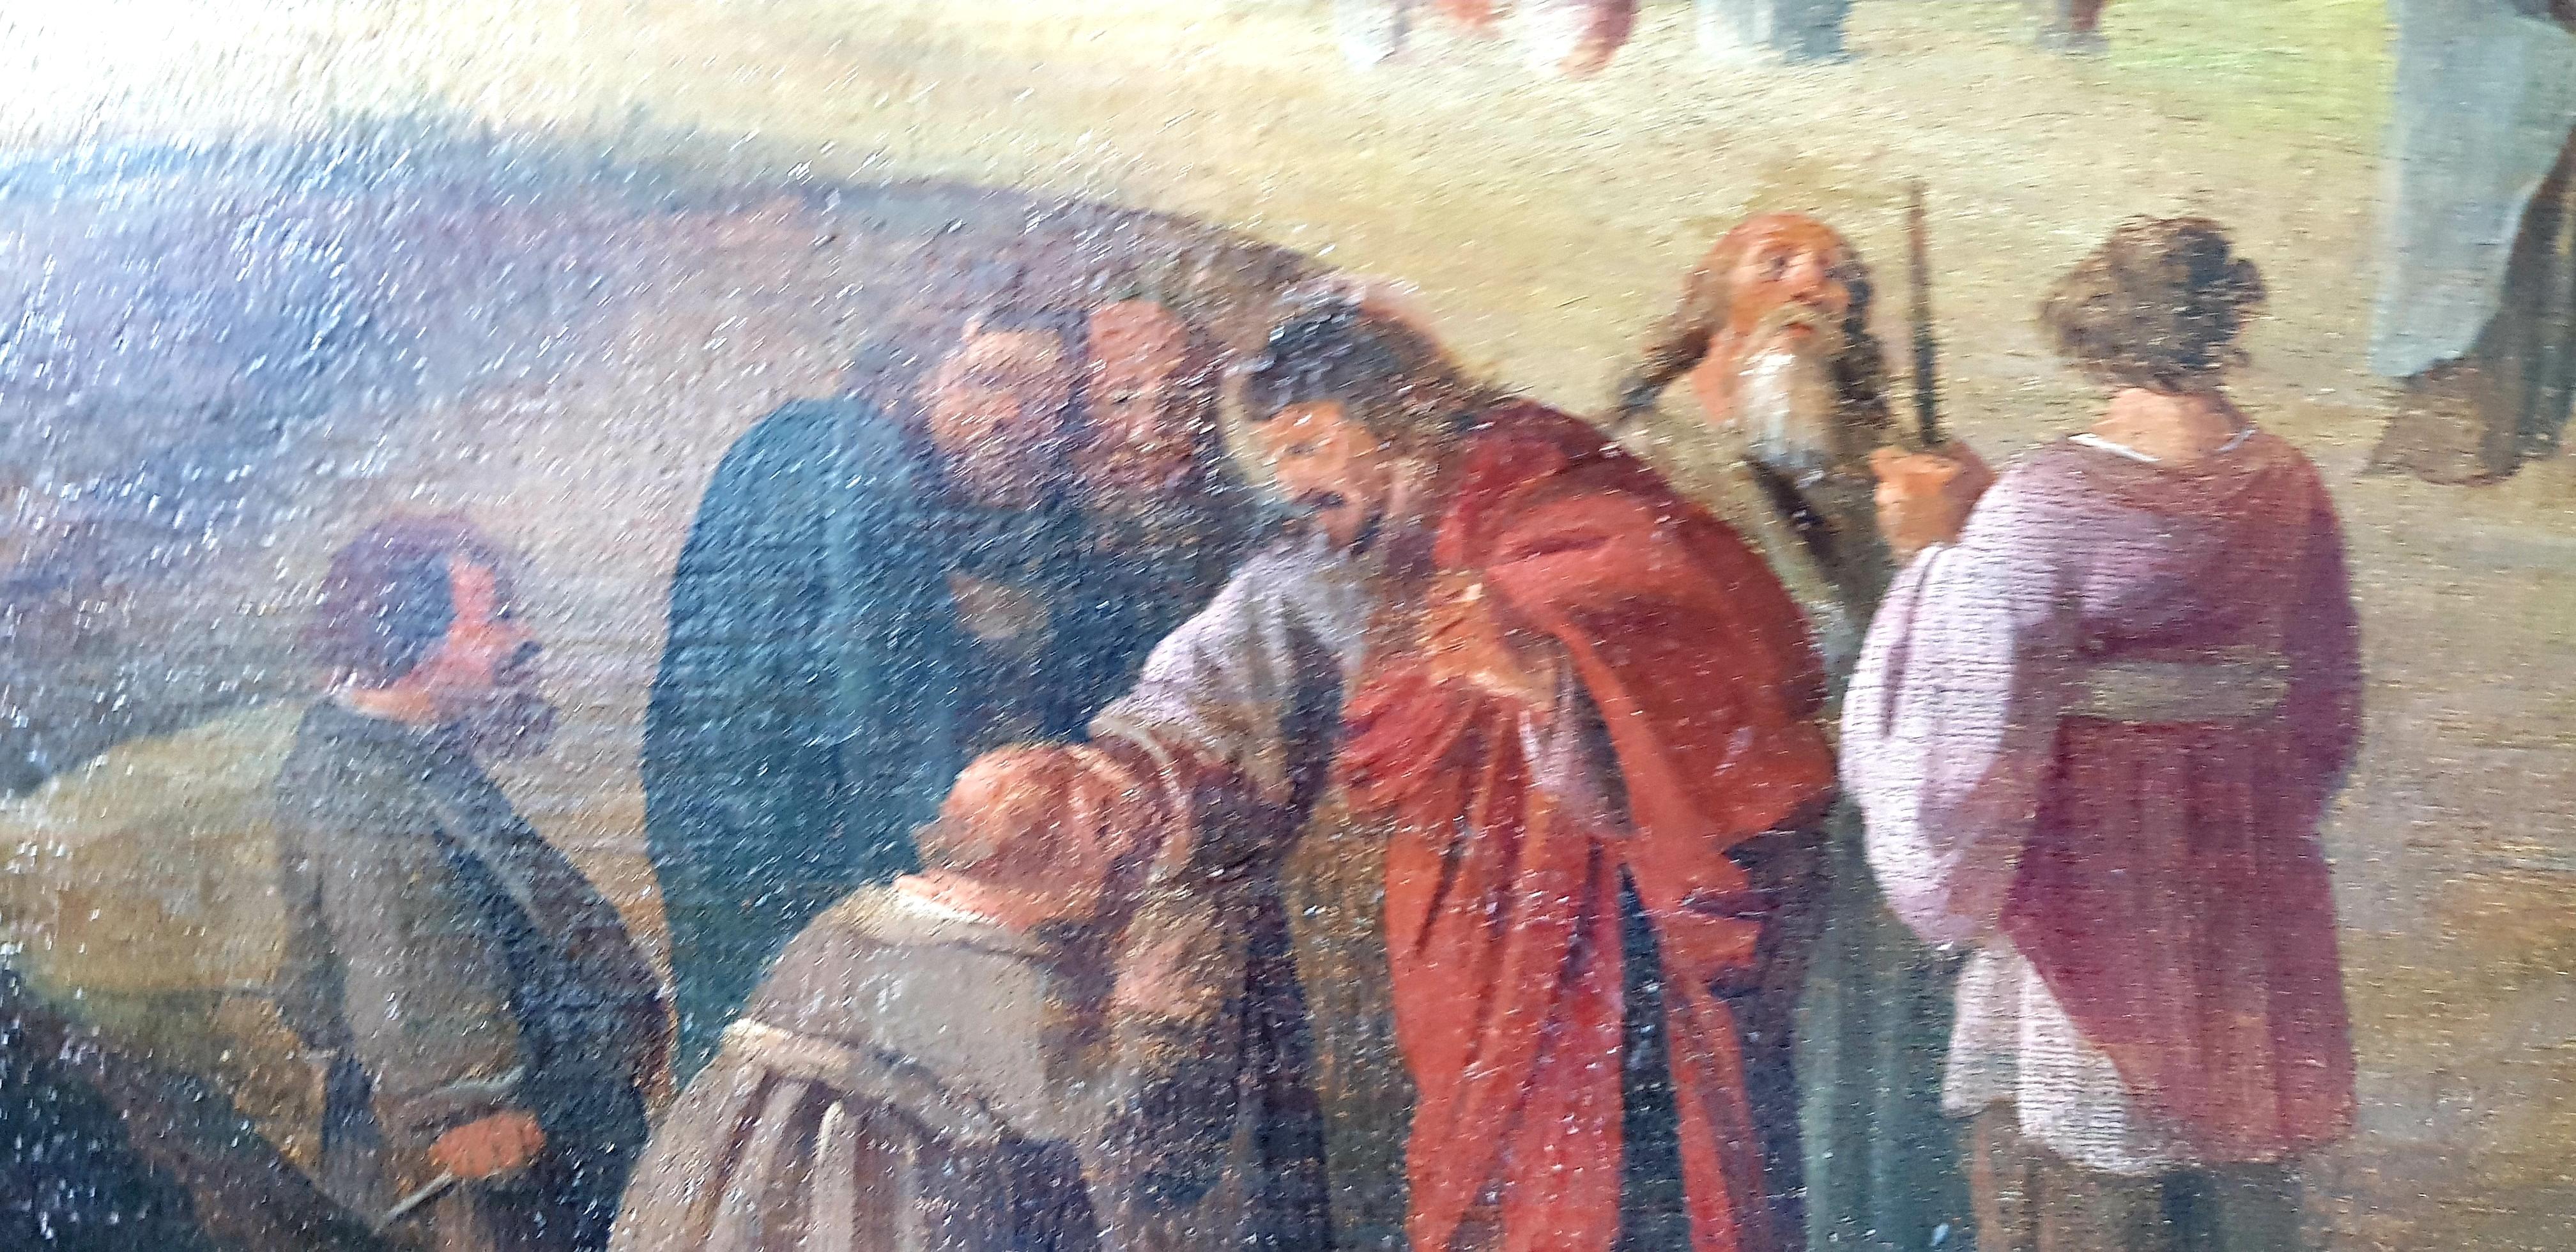 Le baptême du Saint-Esprit, scène biblique, début du 18ème siècle, école florentine - Victorien Painting par Unknown